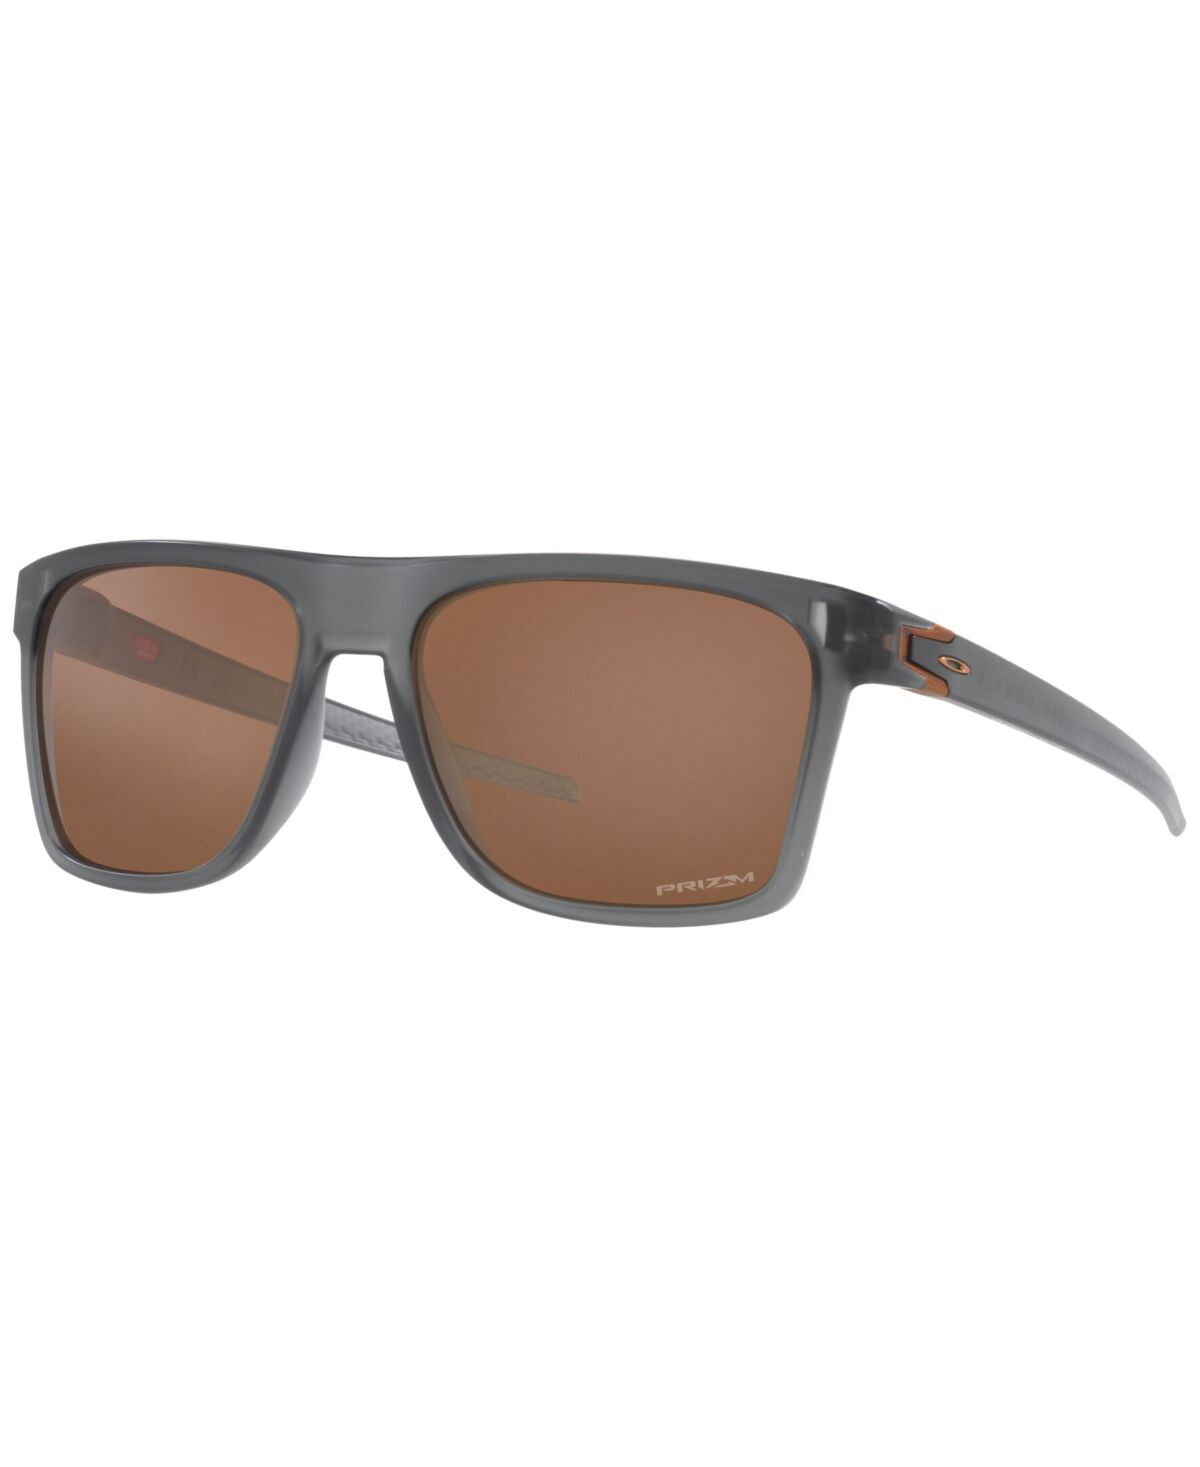 Oakley Men's Sunglasses, Leffingwell 57 - Grey Smoke